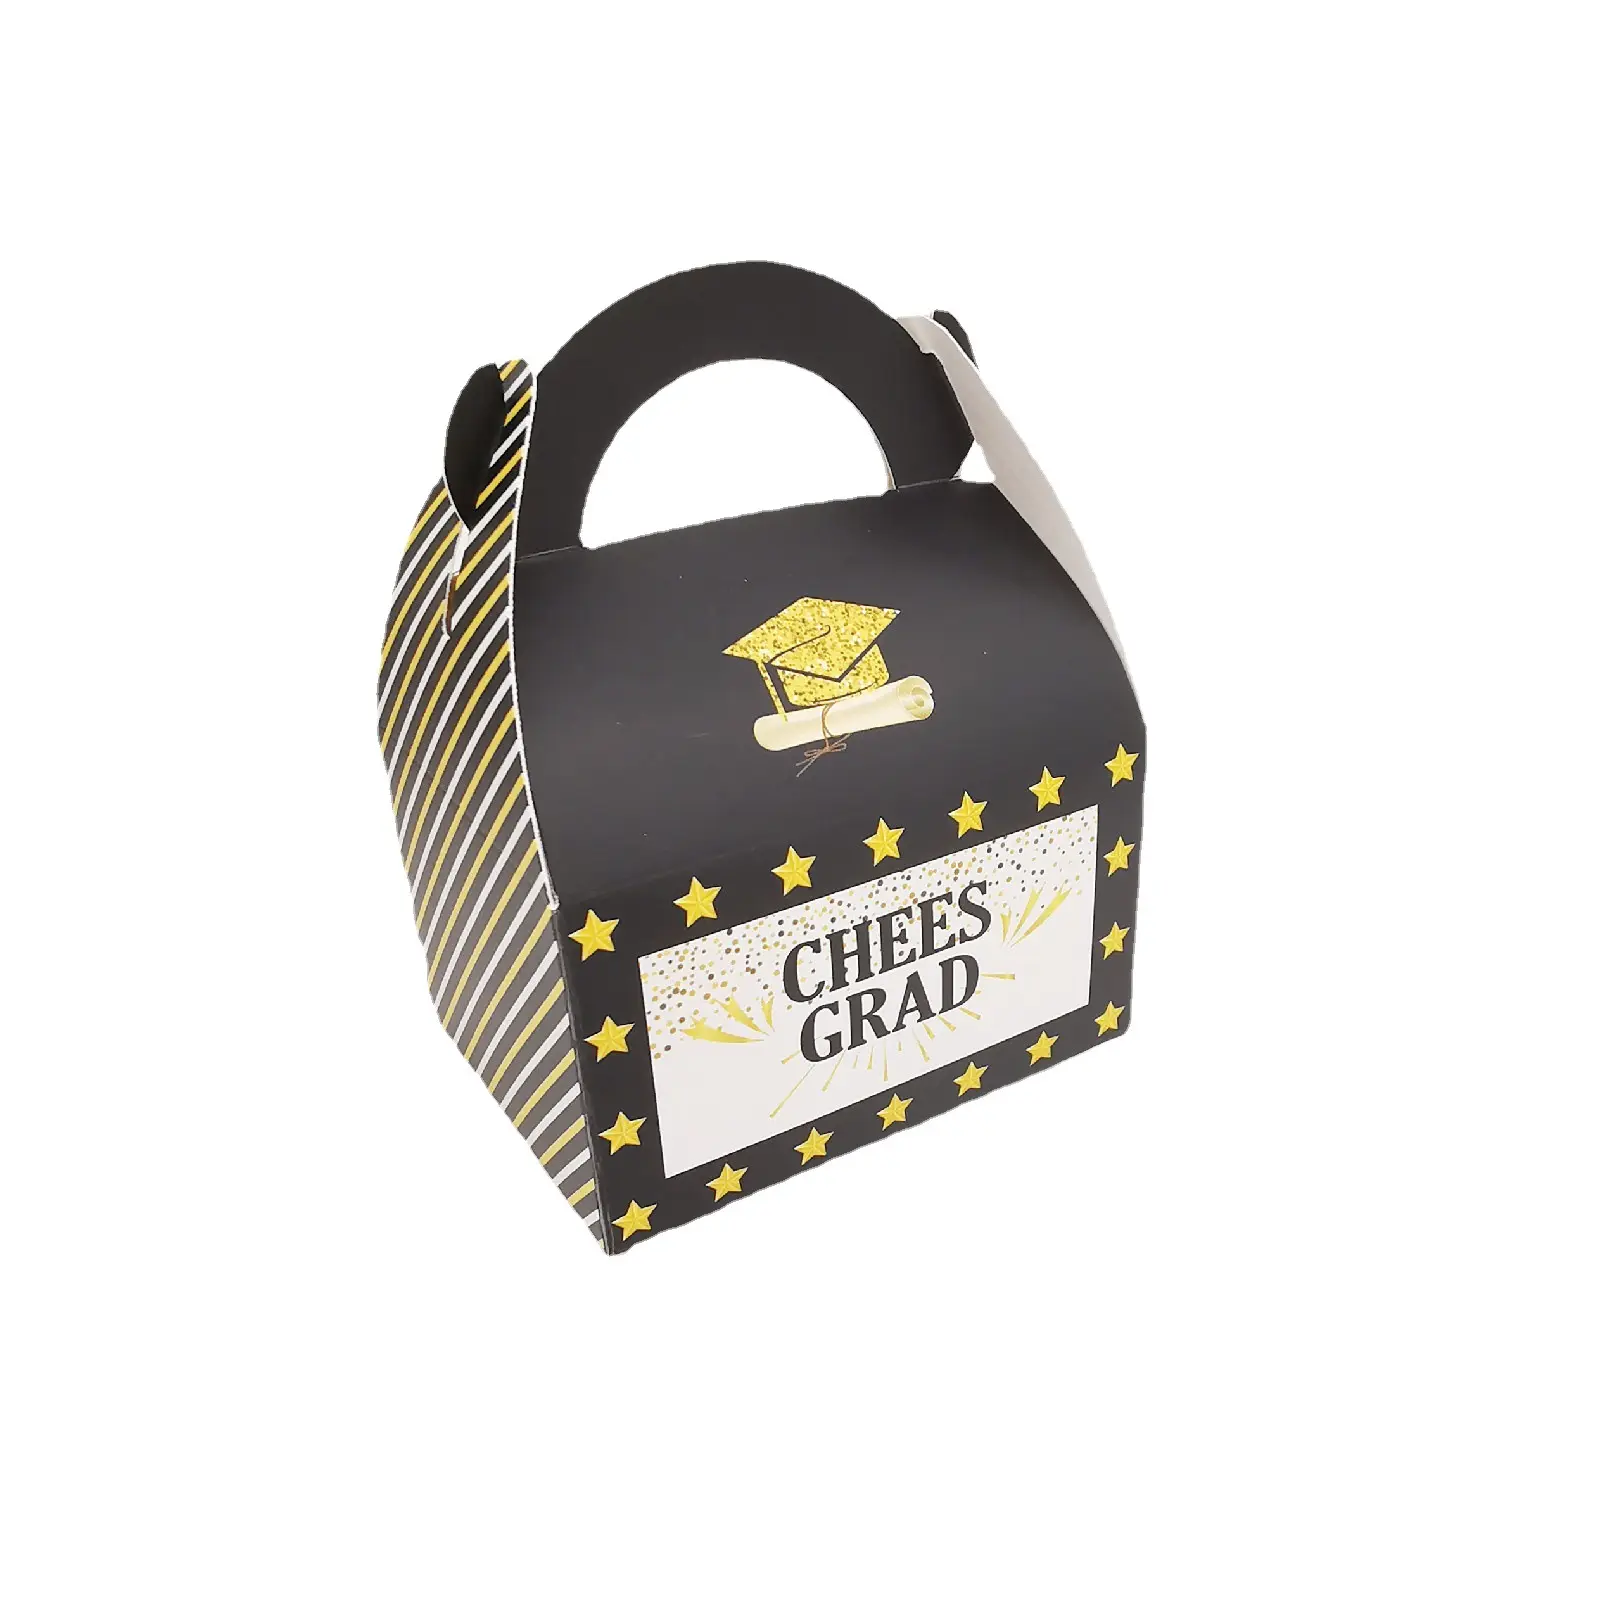 Nouveau design Chapeau de docteur Graduation Celebration Gift Packaging Box Candy Packaging Paper Boxes For Grad Ceremony